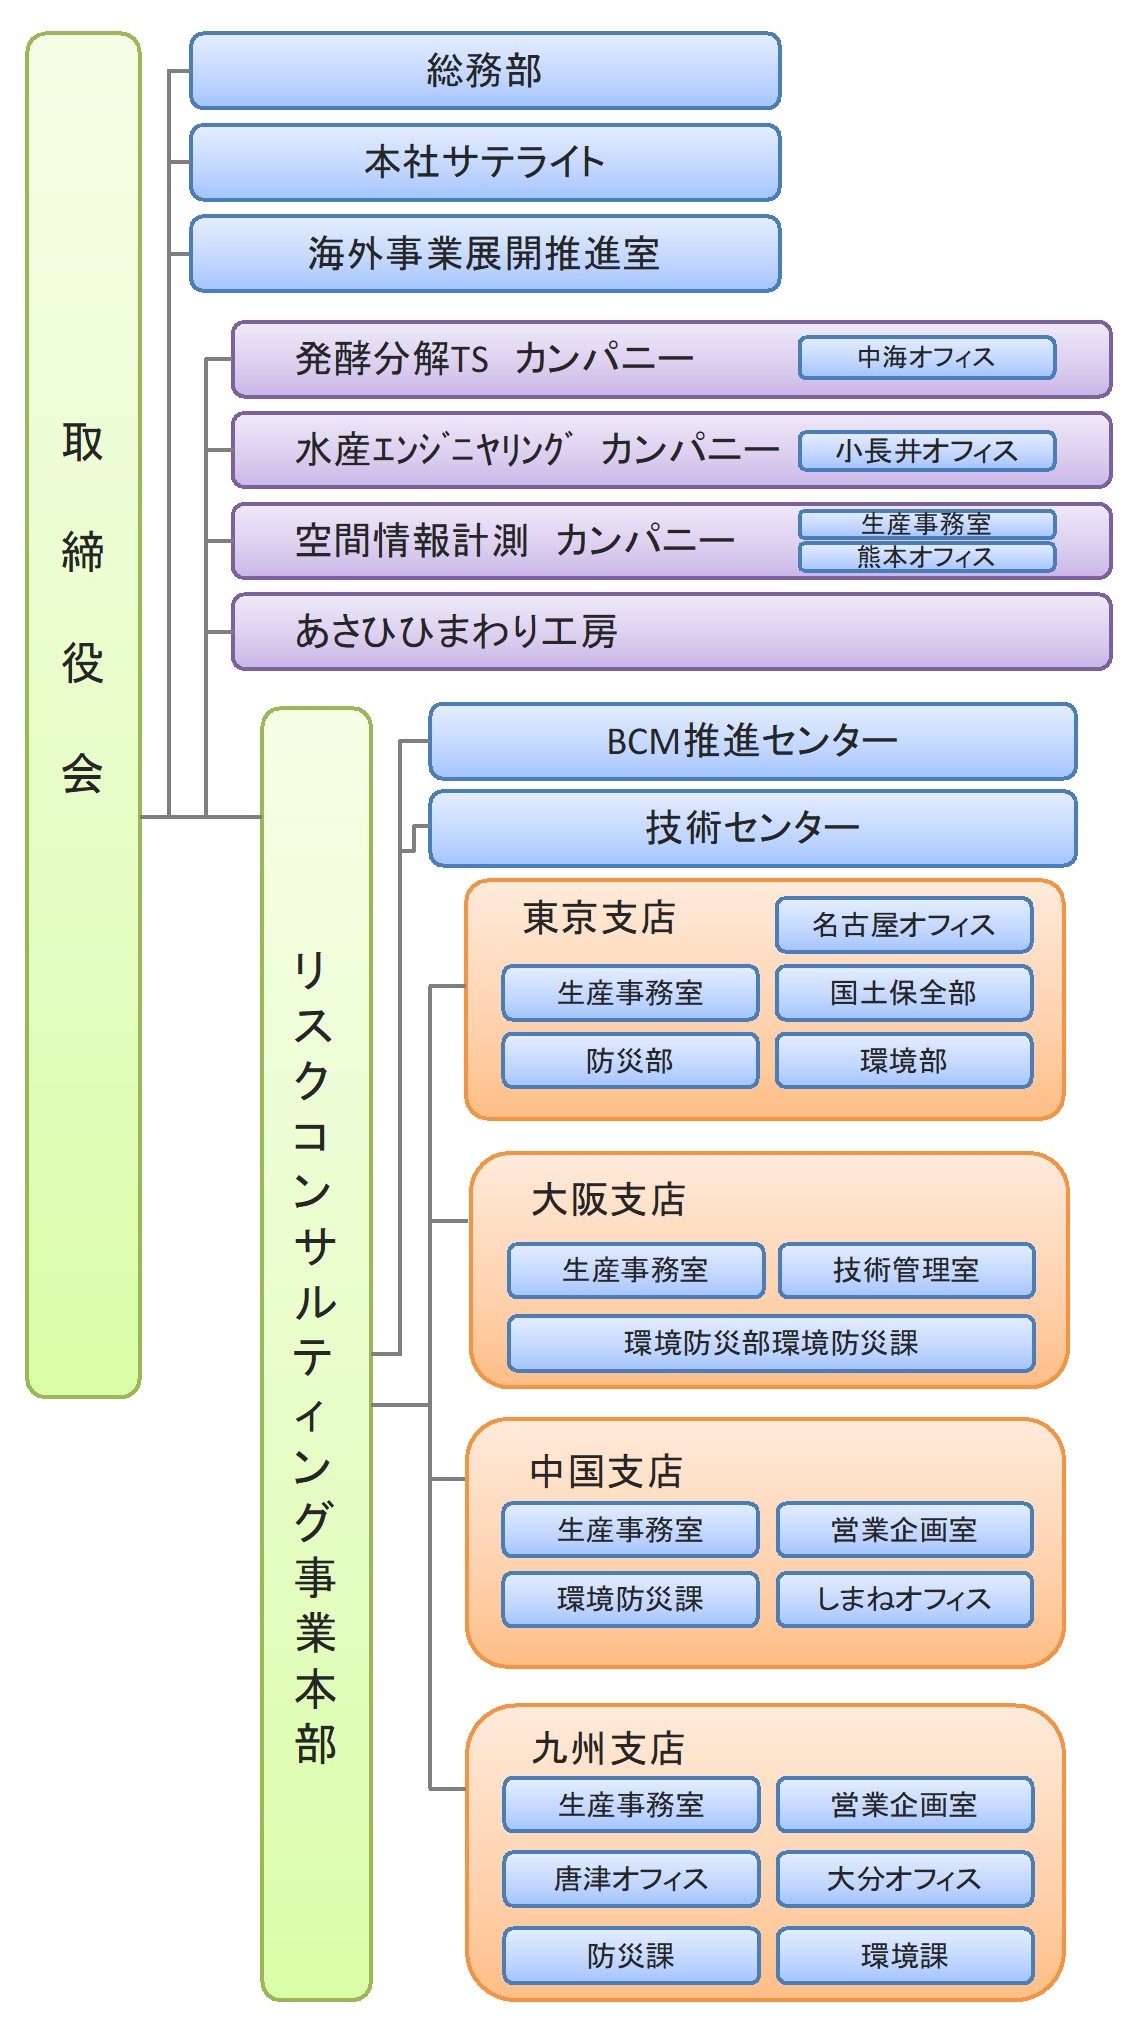 日本ミクニヤ株式会社 組織体制